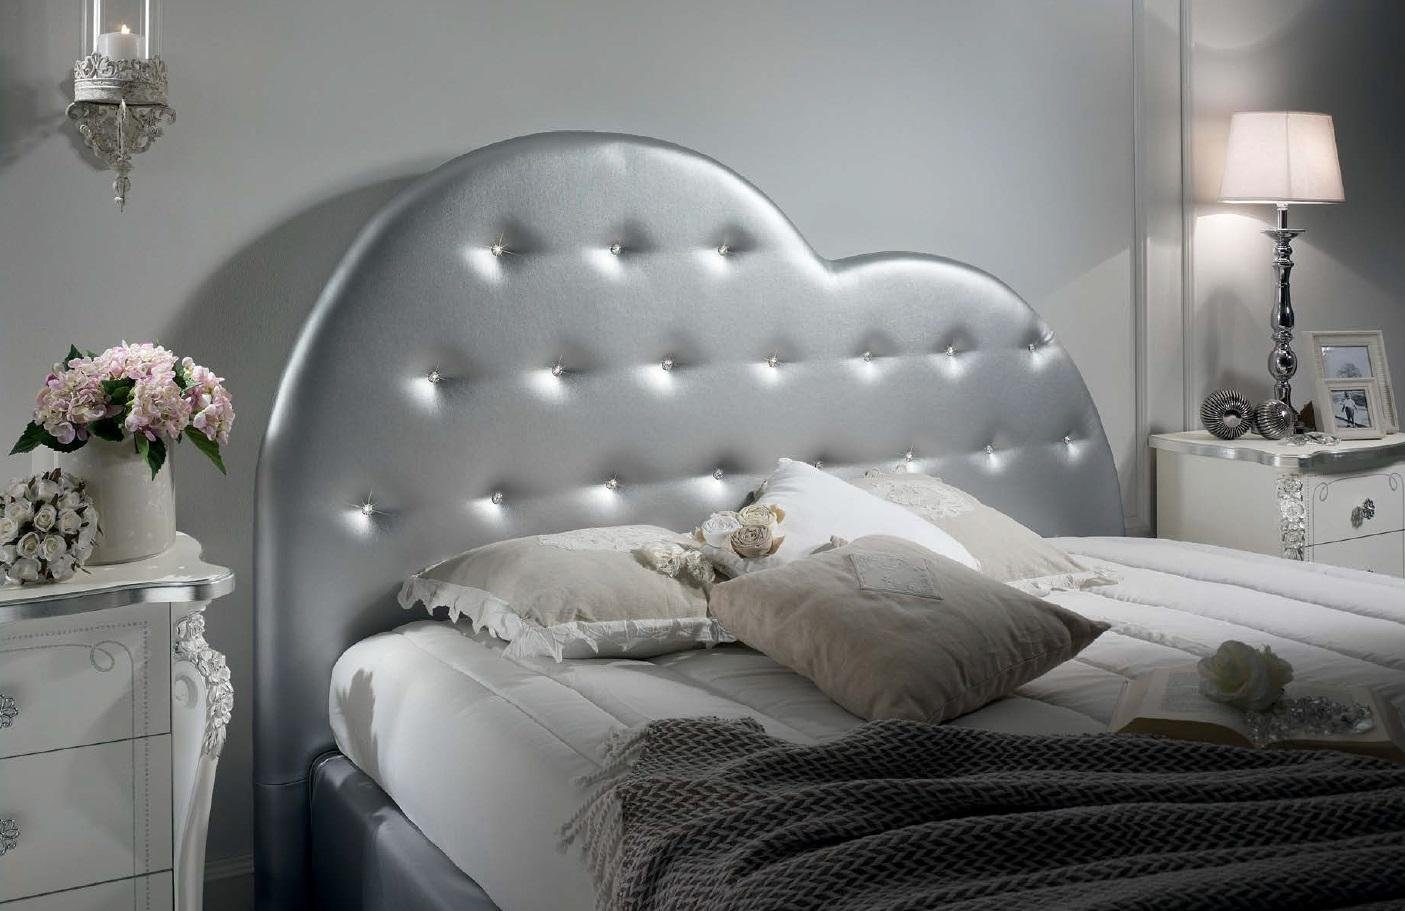 Holz (Bett) Design Bett Italienische Möbel Luxus Betten Möbel JVmoebel Bett Klassische